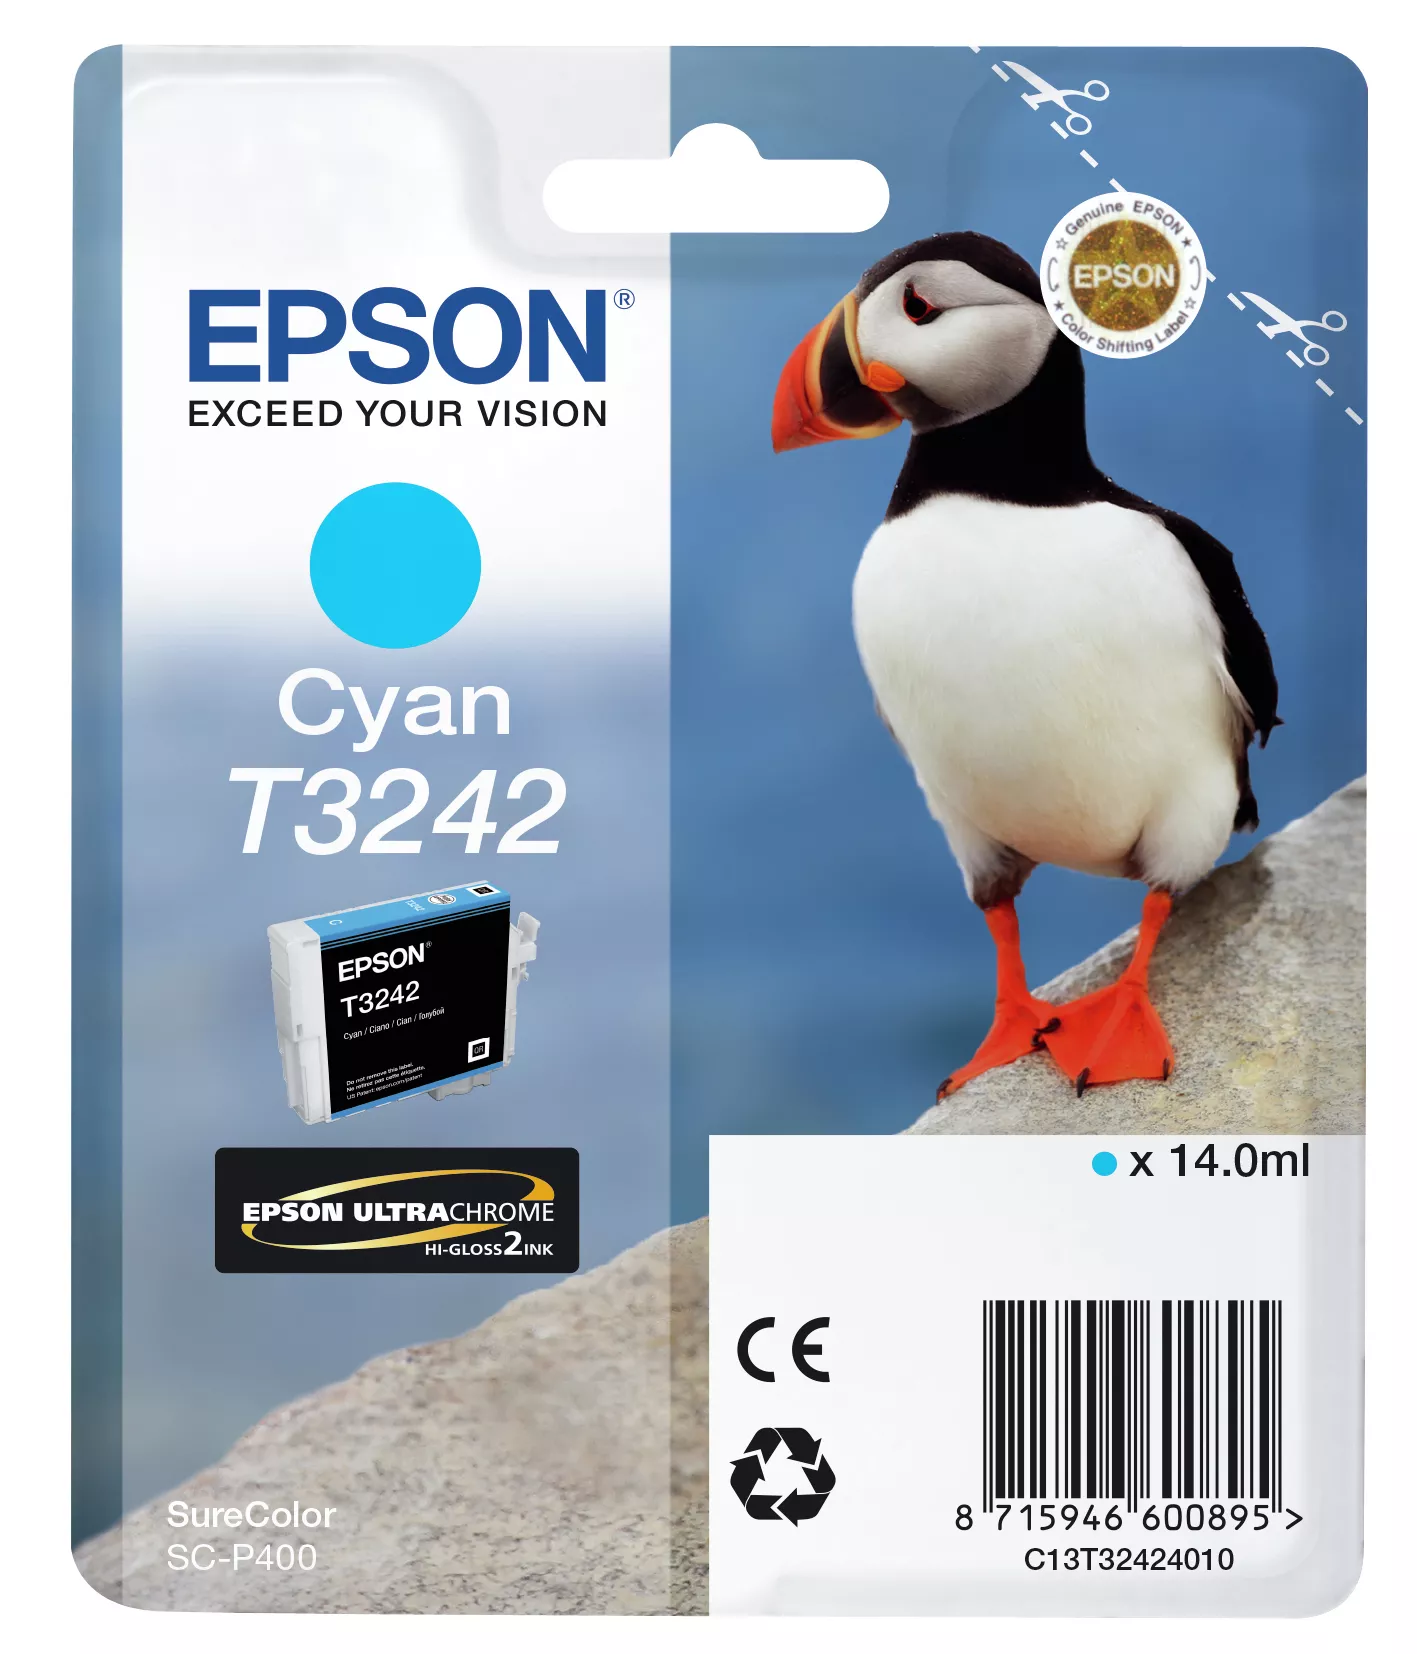 Vente EPSON Cartouche T3242 - Cyan 980 pages au meilleur prix